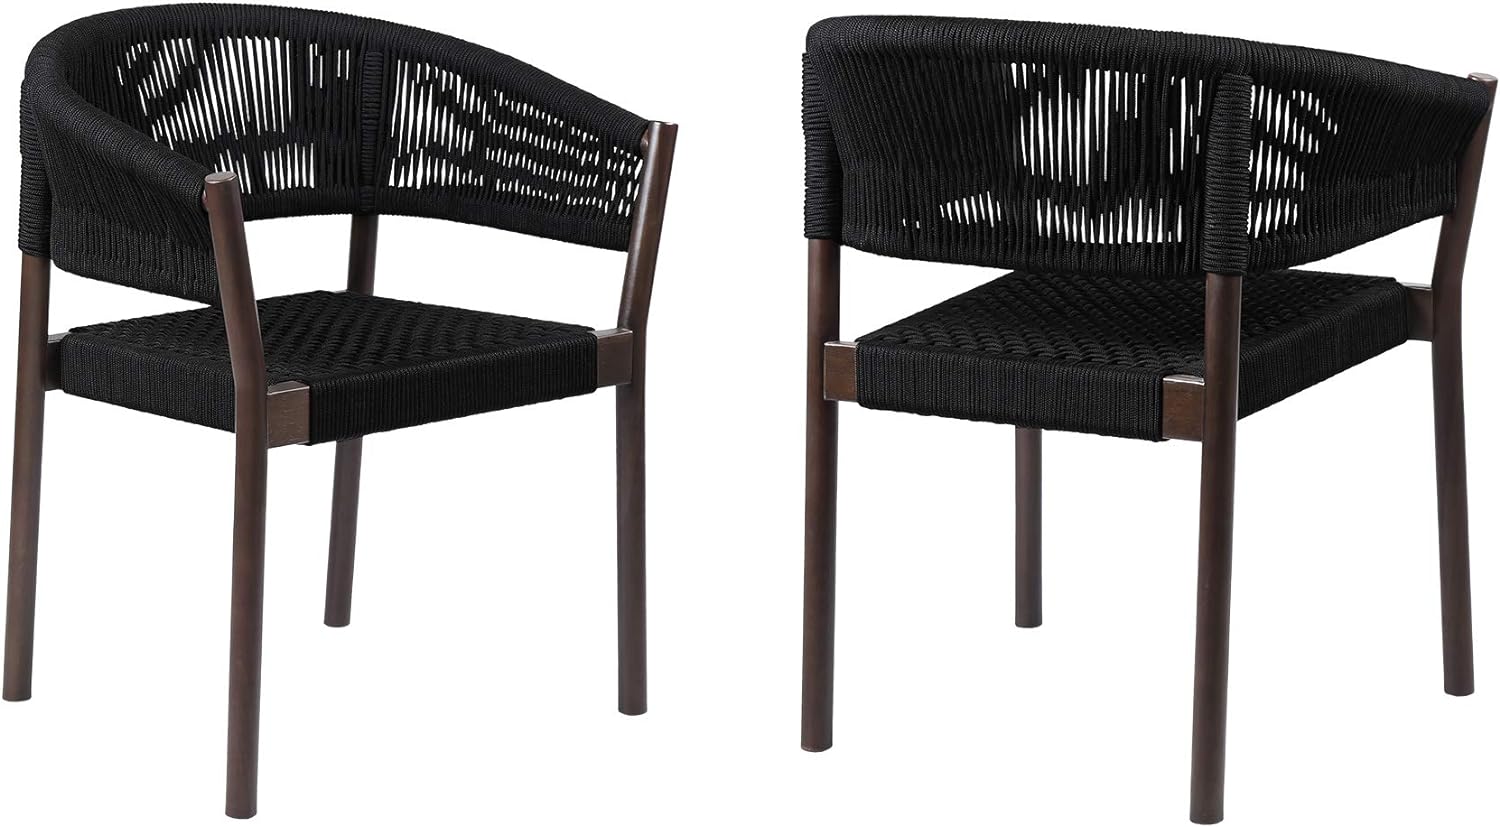 armen Living Doris Indoor Outdoor Dining Chair Eucalyptus Wood Rope-Set of 2, Dark/Black